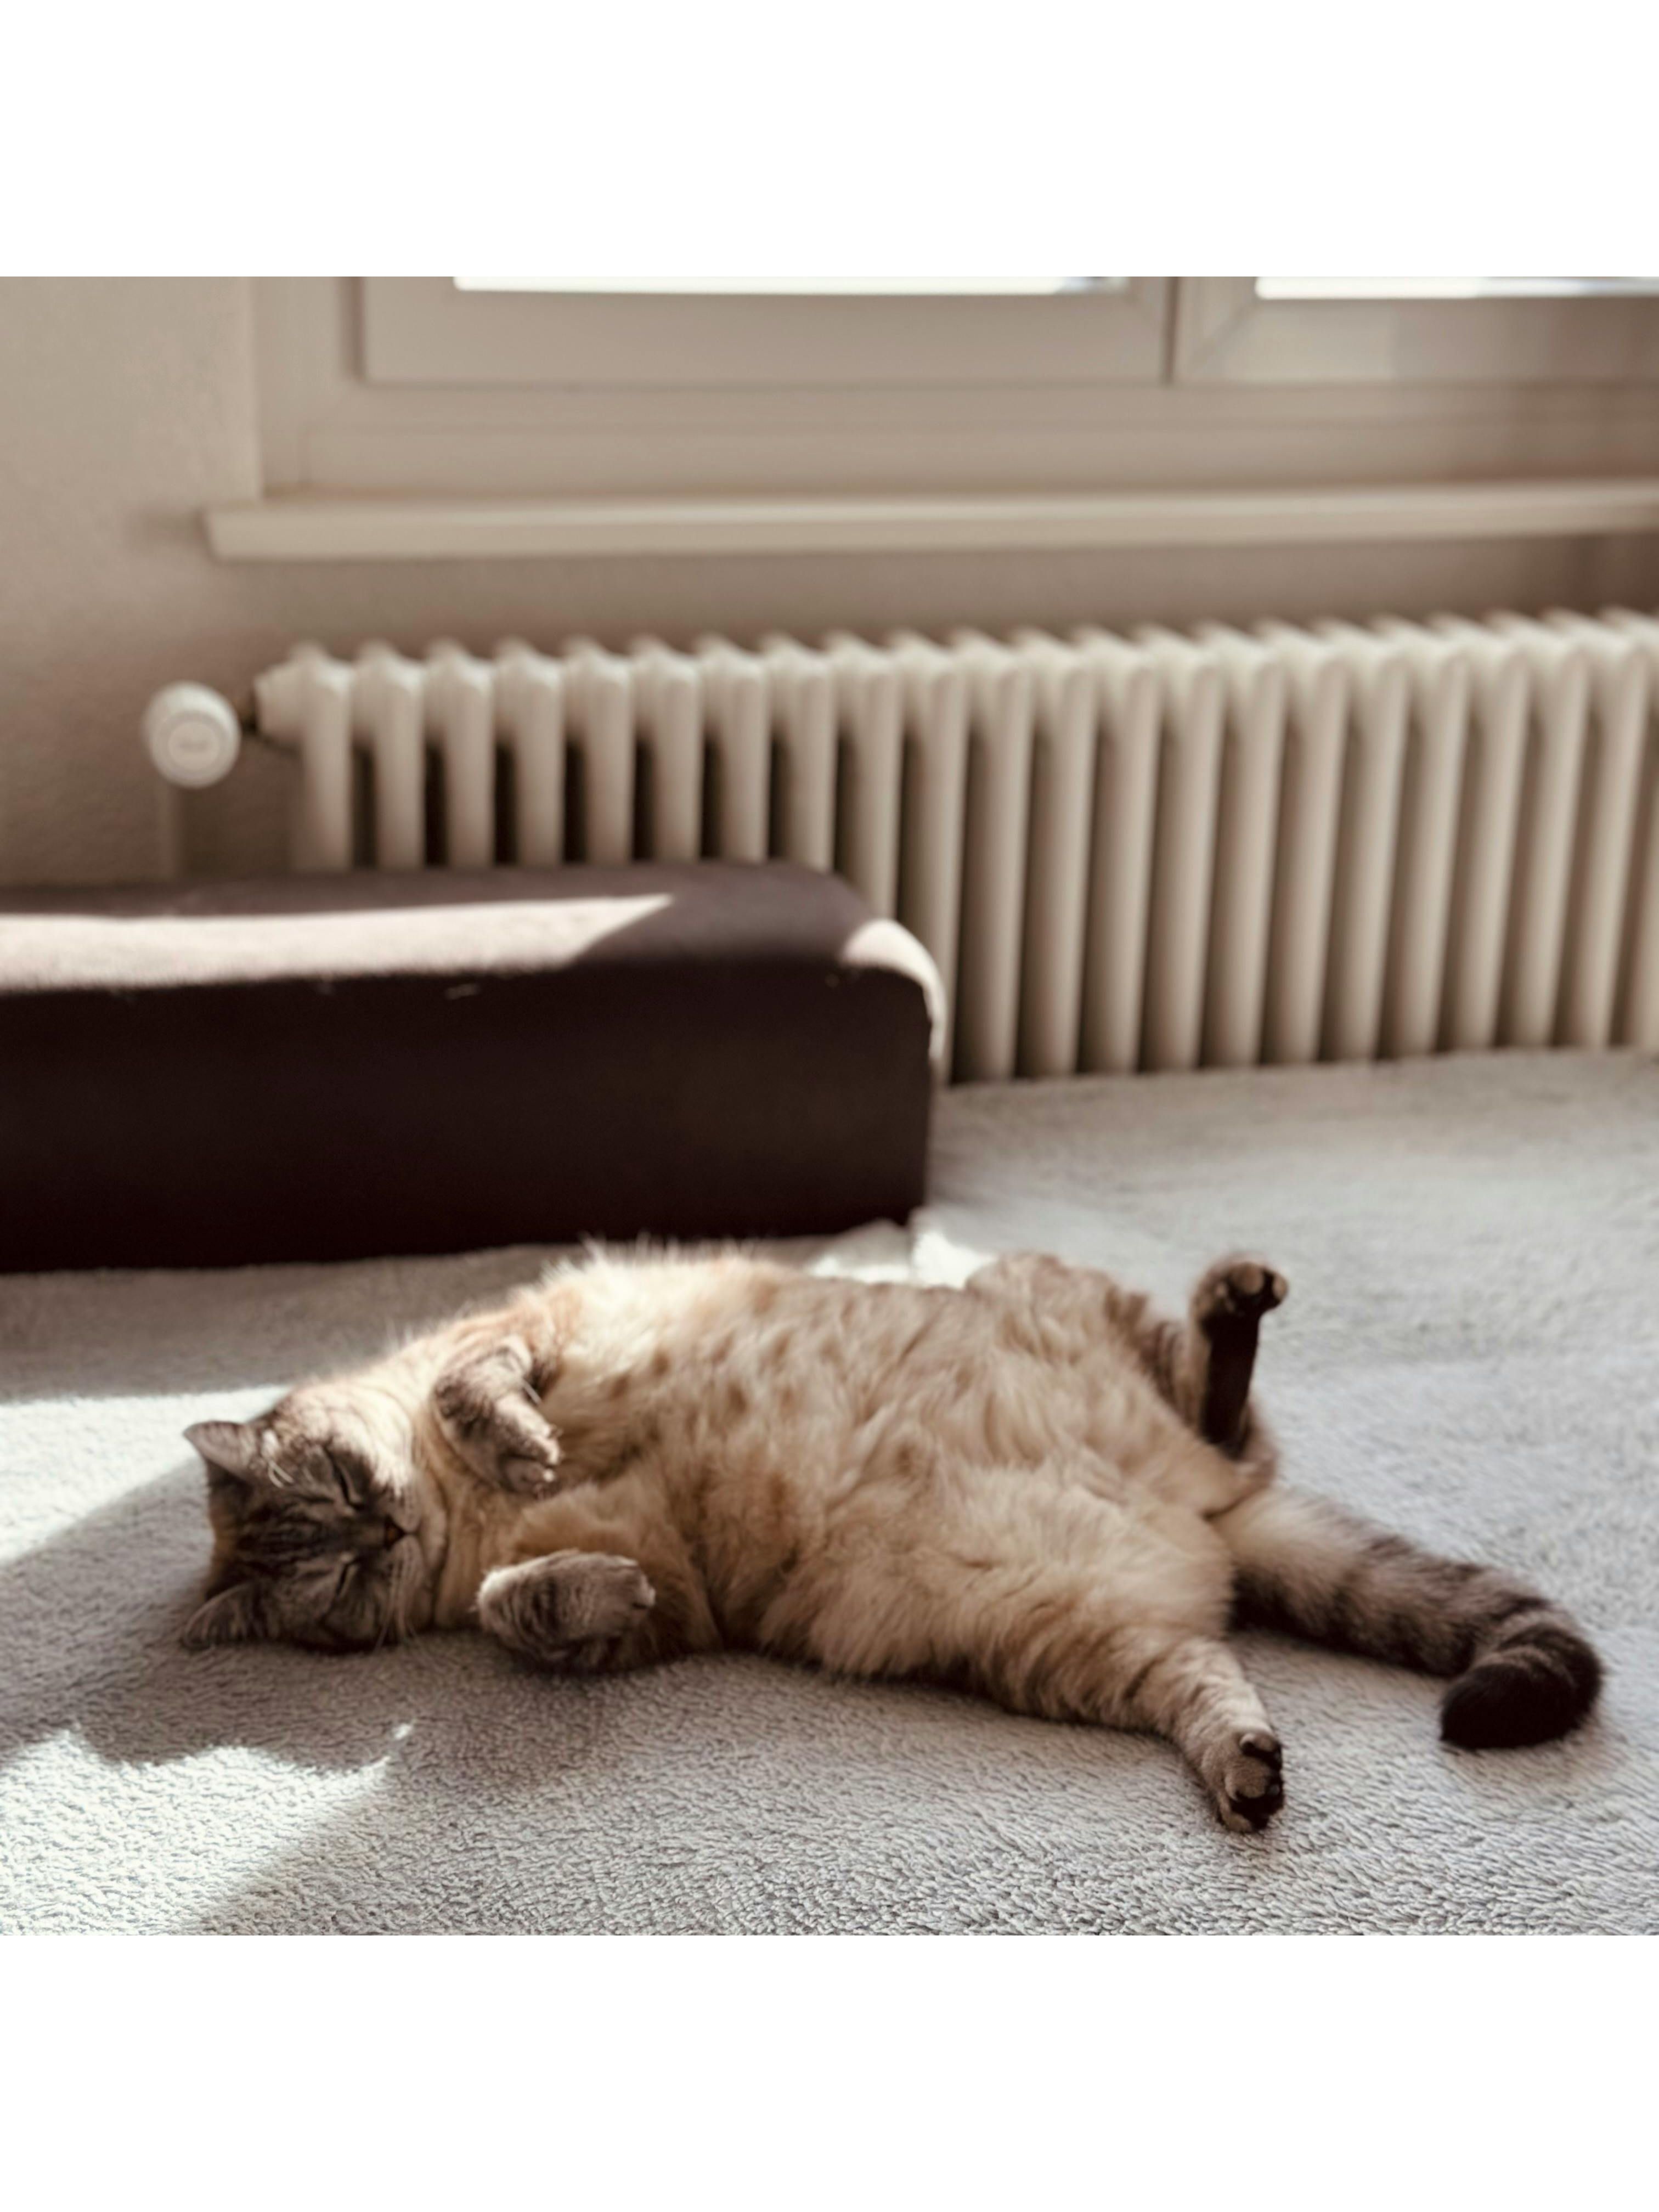 Gato acostado en la alfombra. Foto: Pexels/Nadin